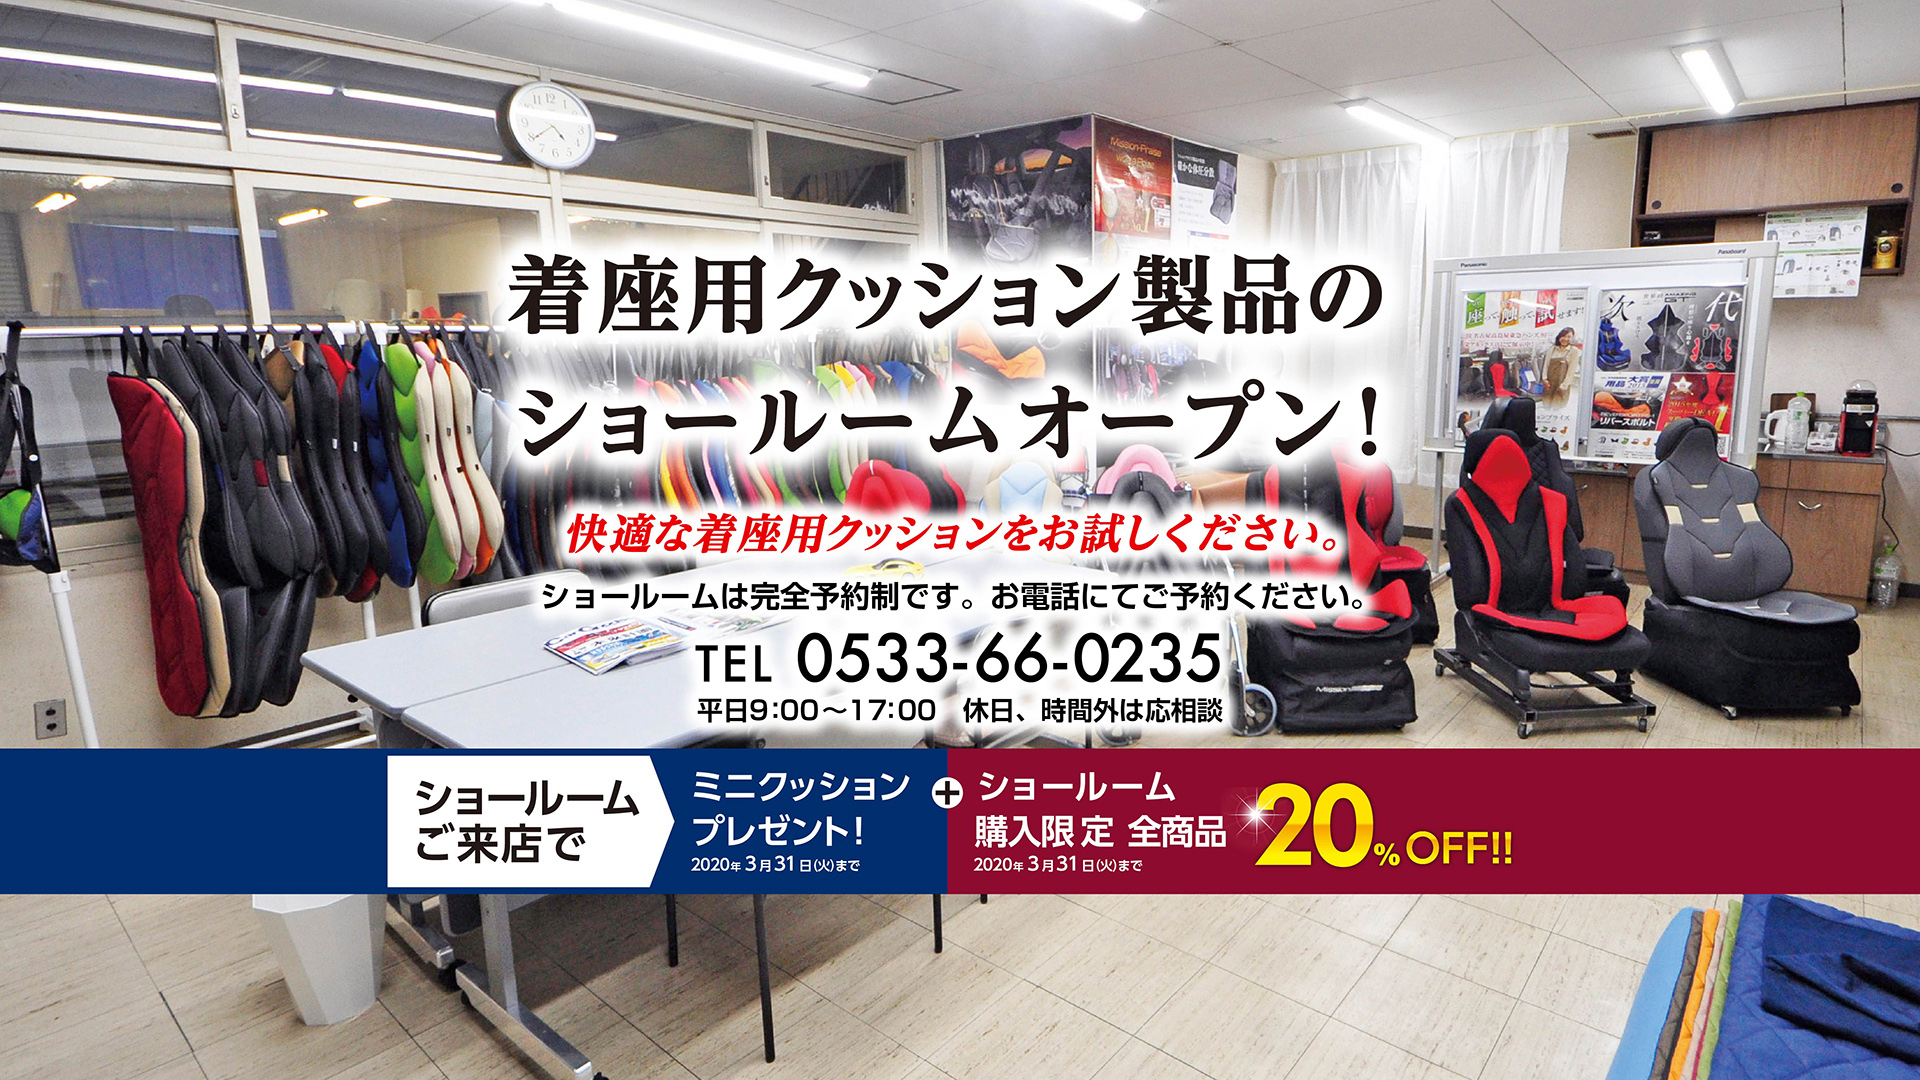 Mission Praise(ミッションプライズ)は、快適性×デザイン性を追求した国産で手作りの高機能ッ製着座用パッドです。1点1点丹誠こめてつくります。 Hand Maid in Japan.